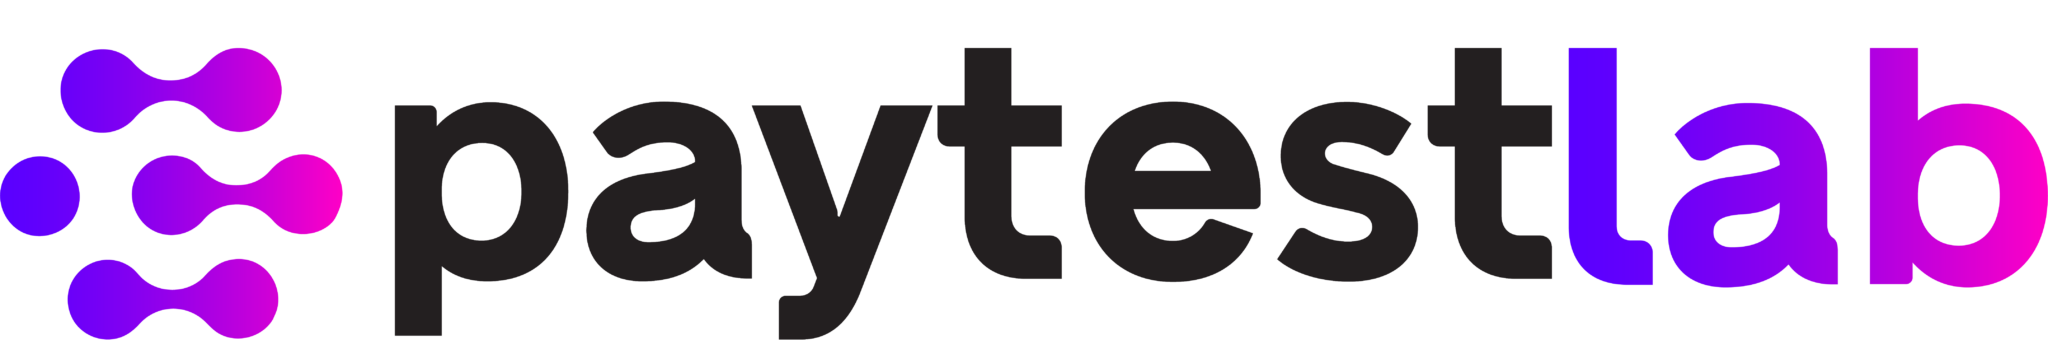 cropped Paytestlab Primary Logo 2048x363 1